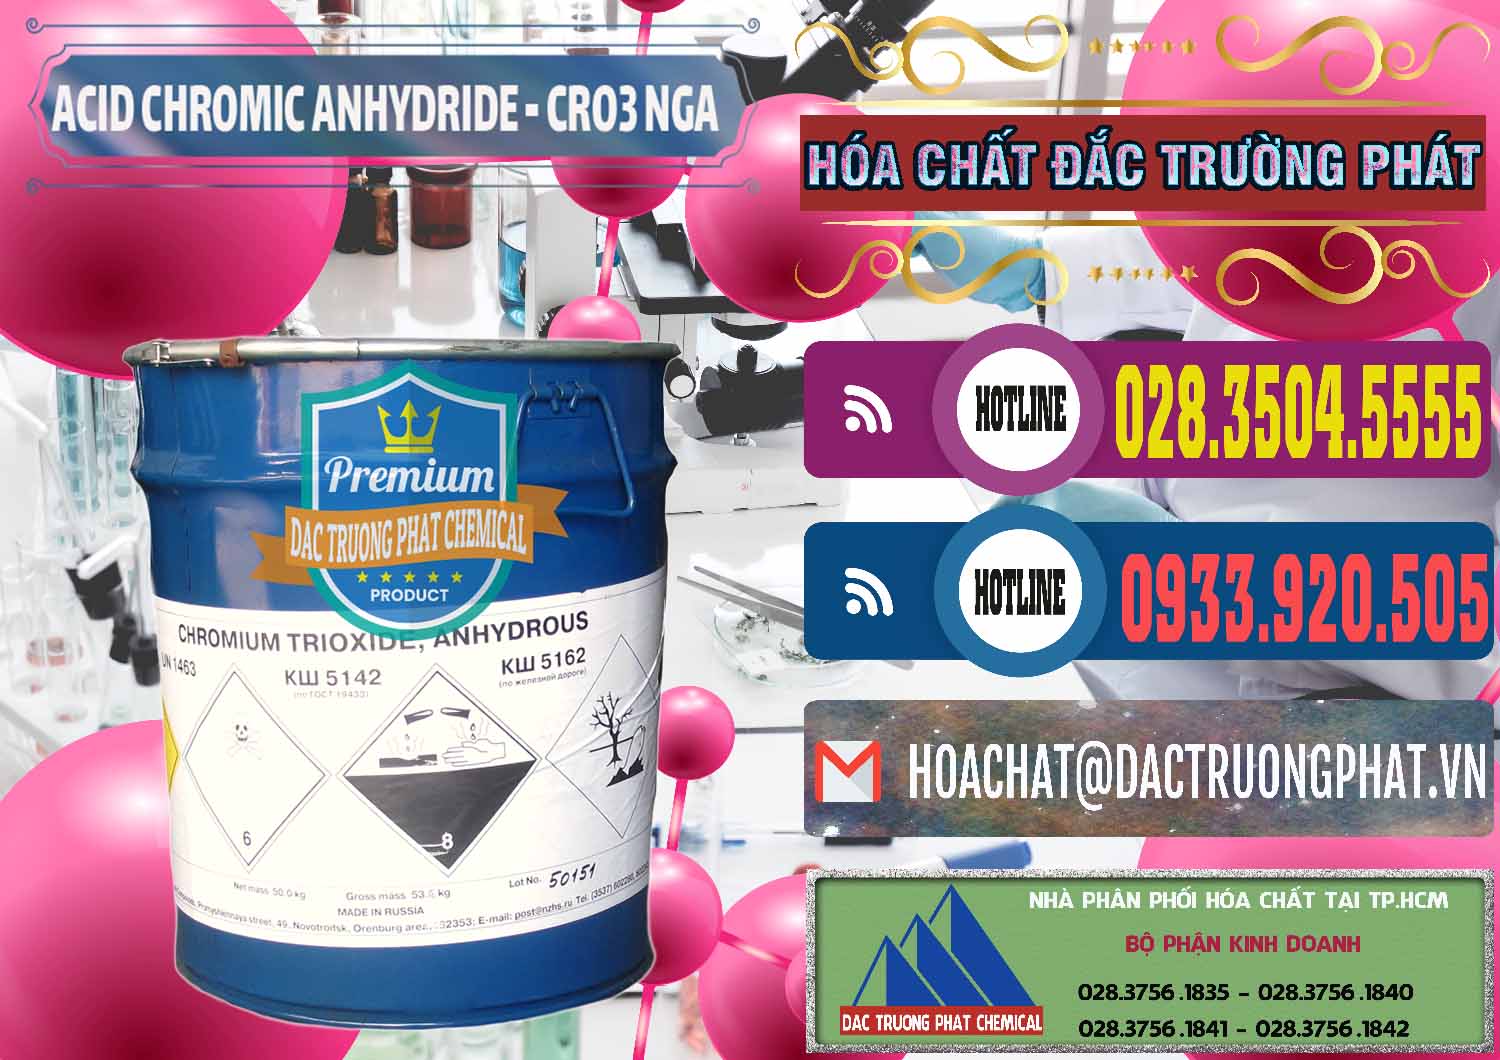 Nơi chuyên bán - cung cấp Acid Chromic Anhydride - Cromic CRO3 Nga Russia - 0006 - Cty chuyên bán - phân phối hóa chất tại TP.HCM - muabanhoachat.com.vn